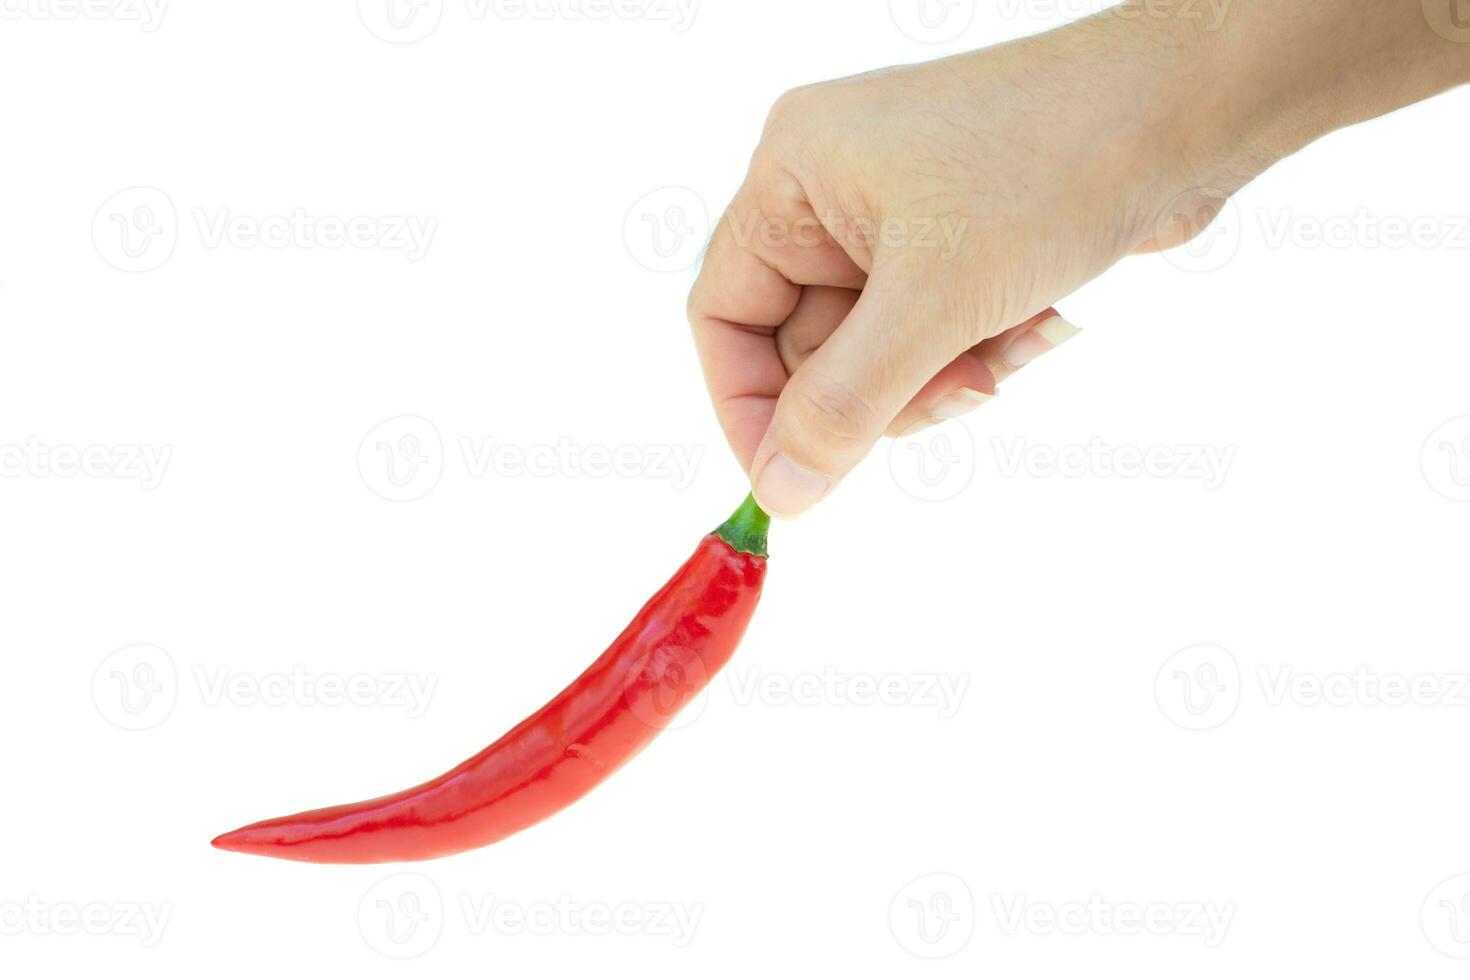 red hot chili aansporing peper op de hand van een dame geïsoleerd op een witte achtergrond foto